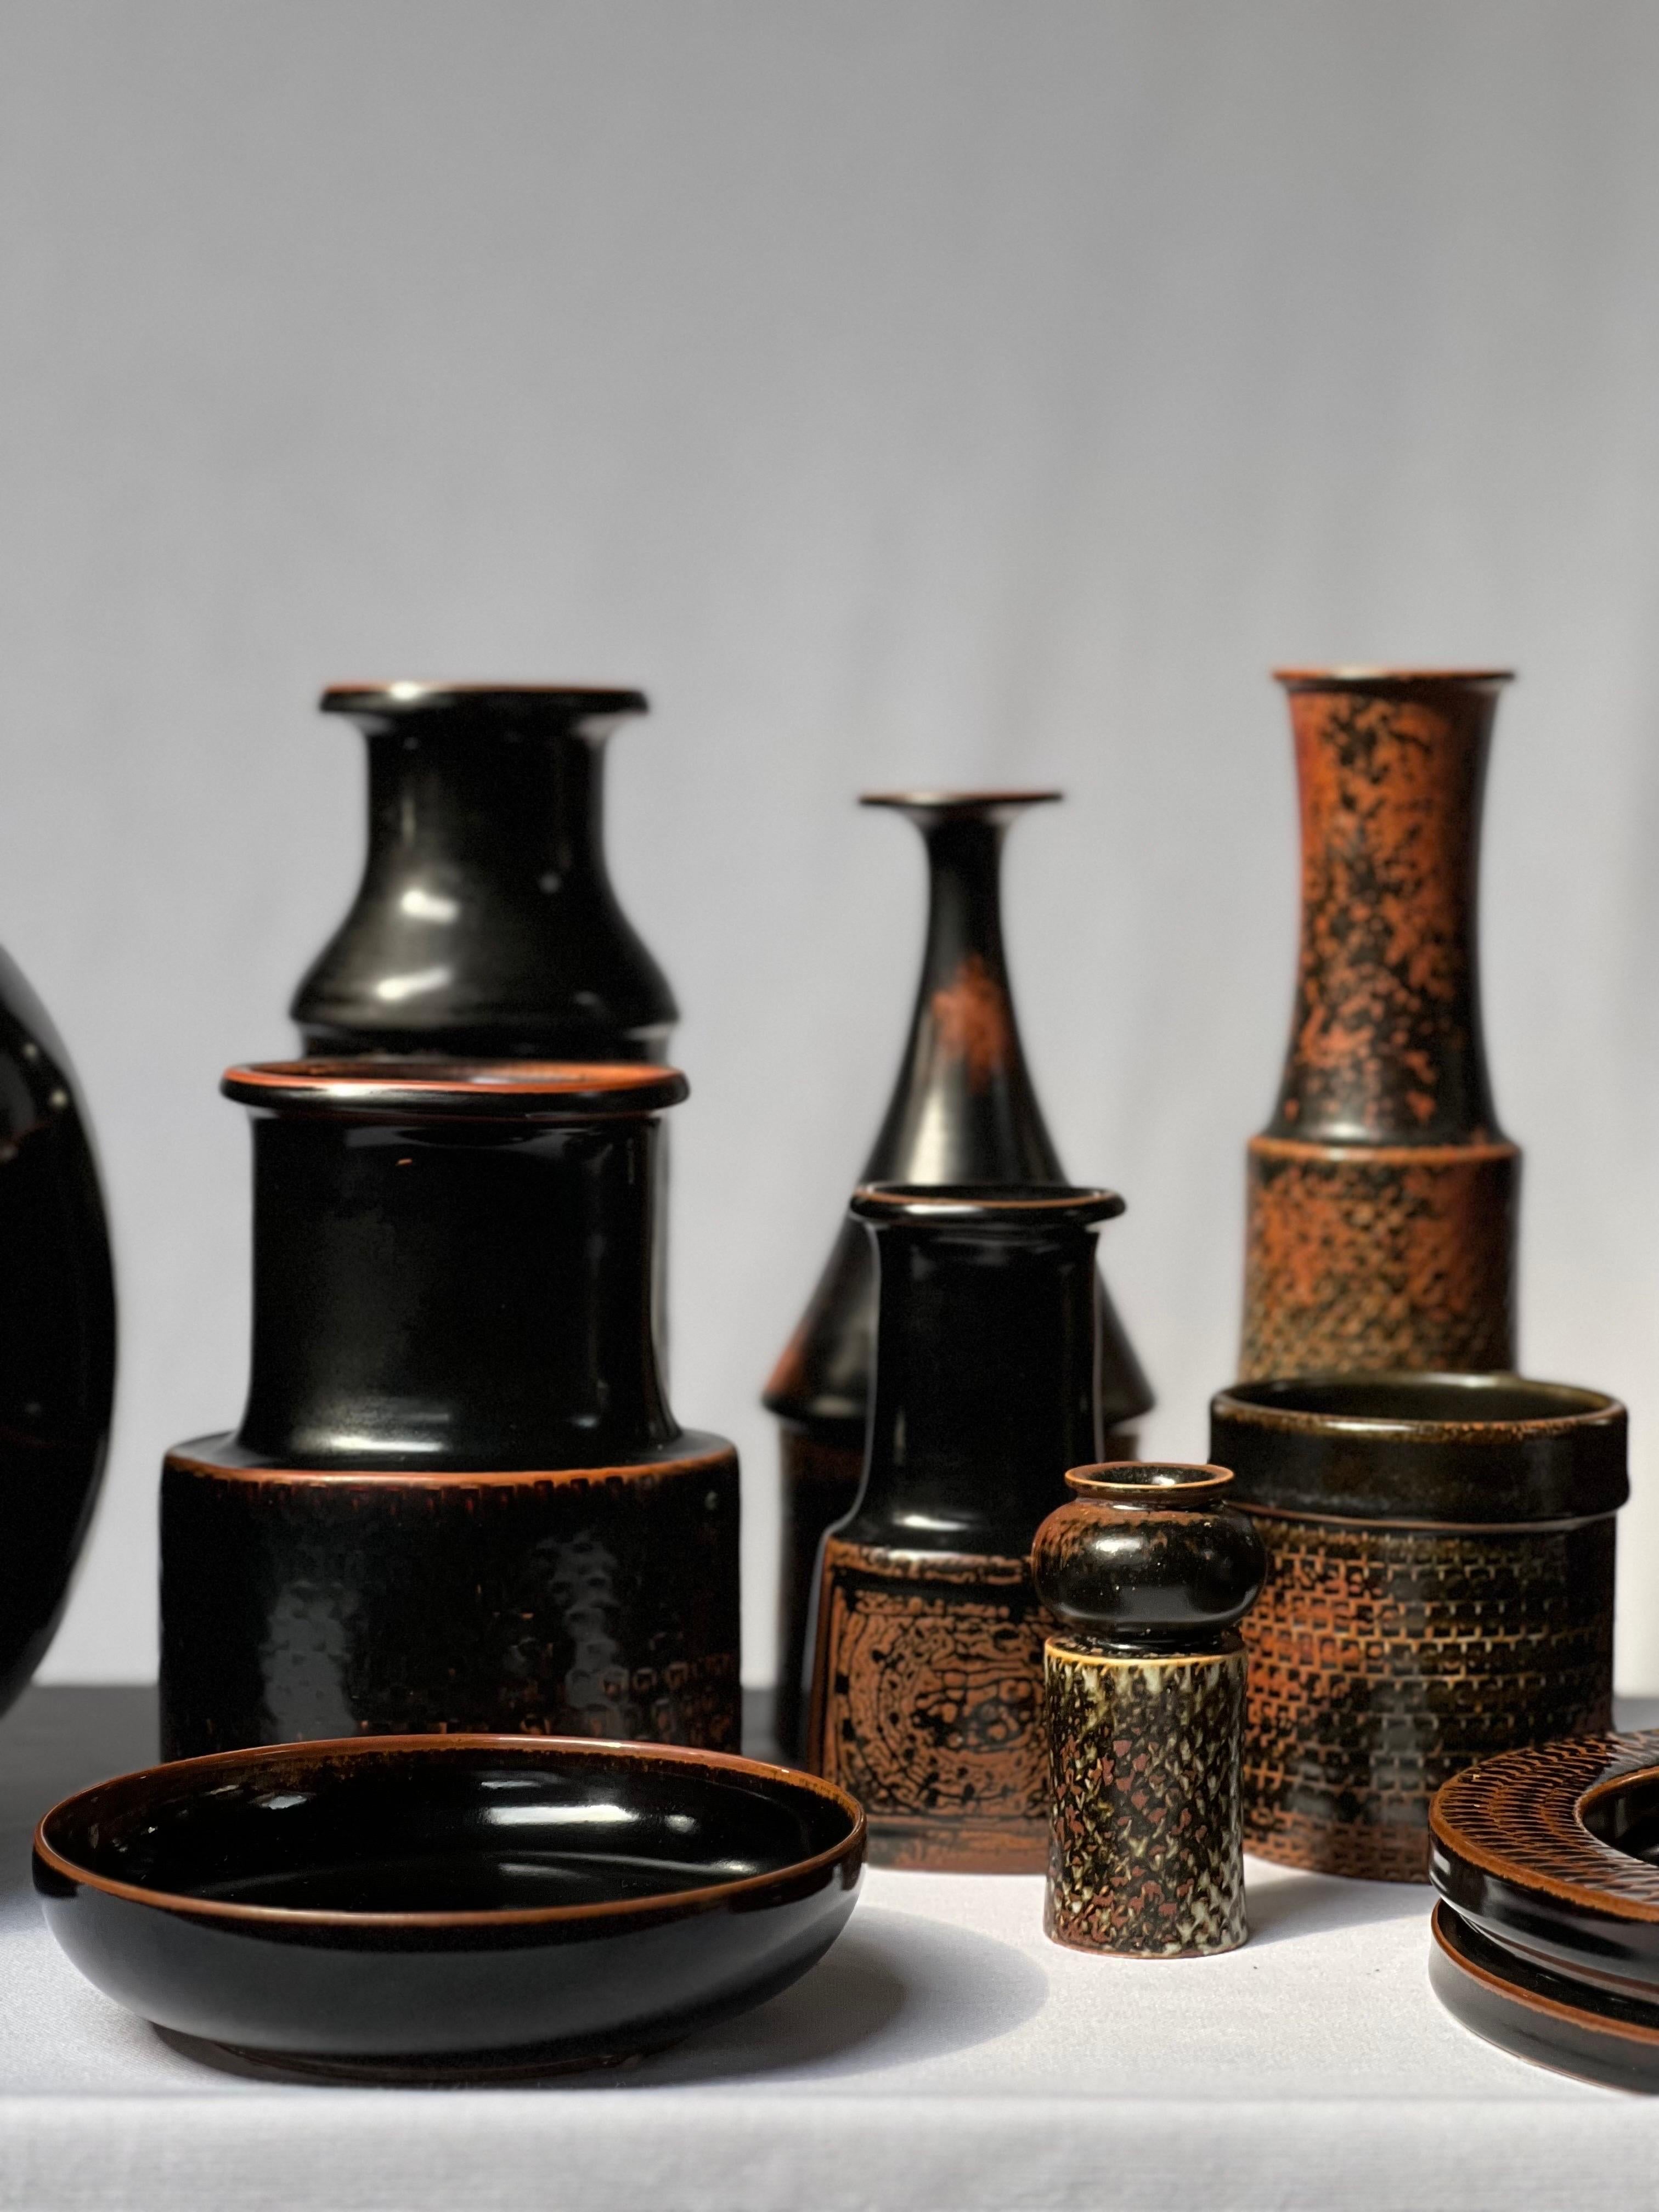 Stig Lindberg Unique Vase in black Glaze Tenmoku Made by Hand Sweden 1969 For Sale 4